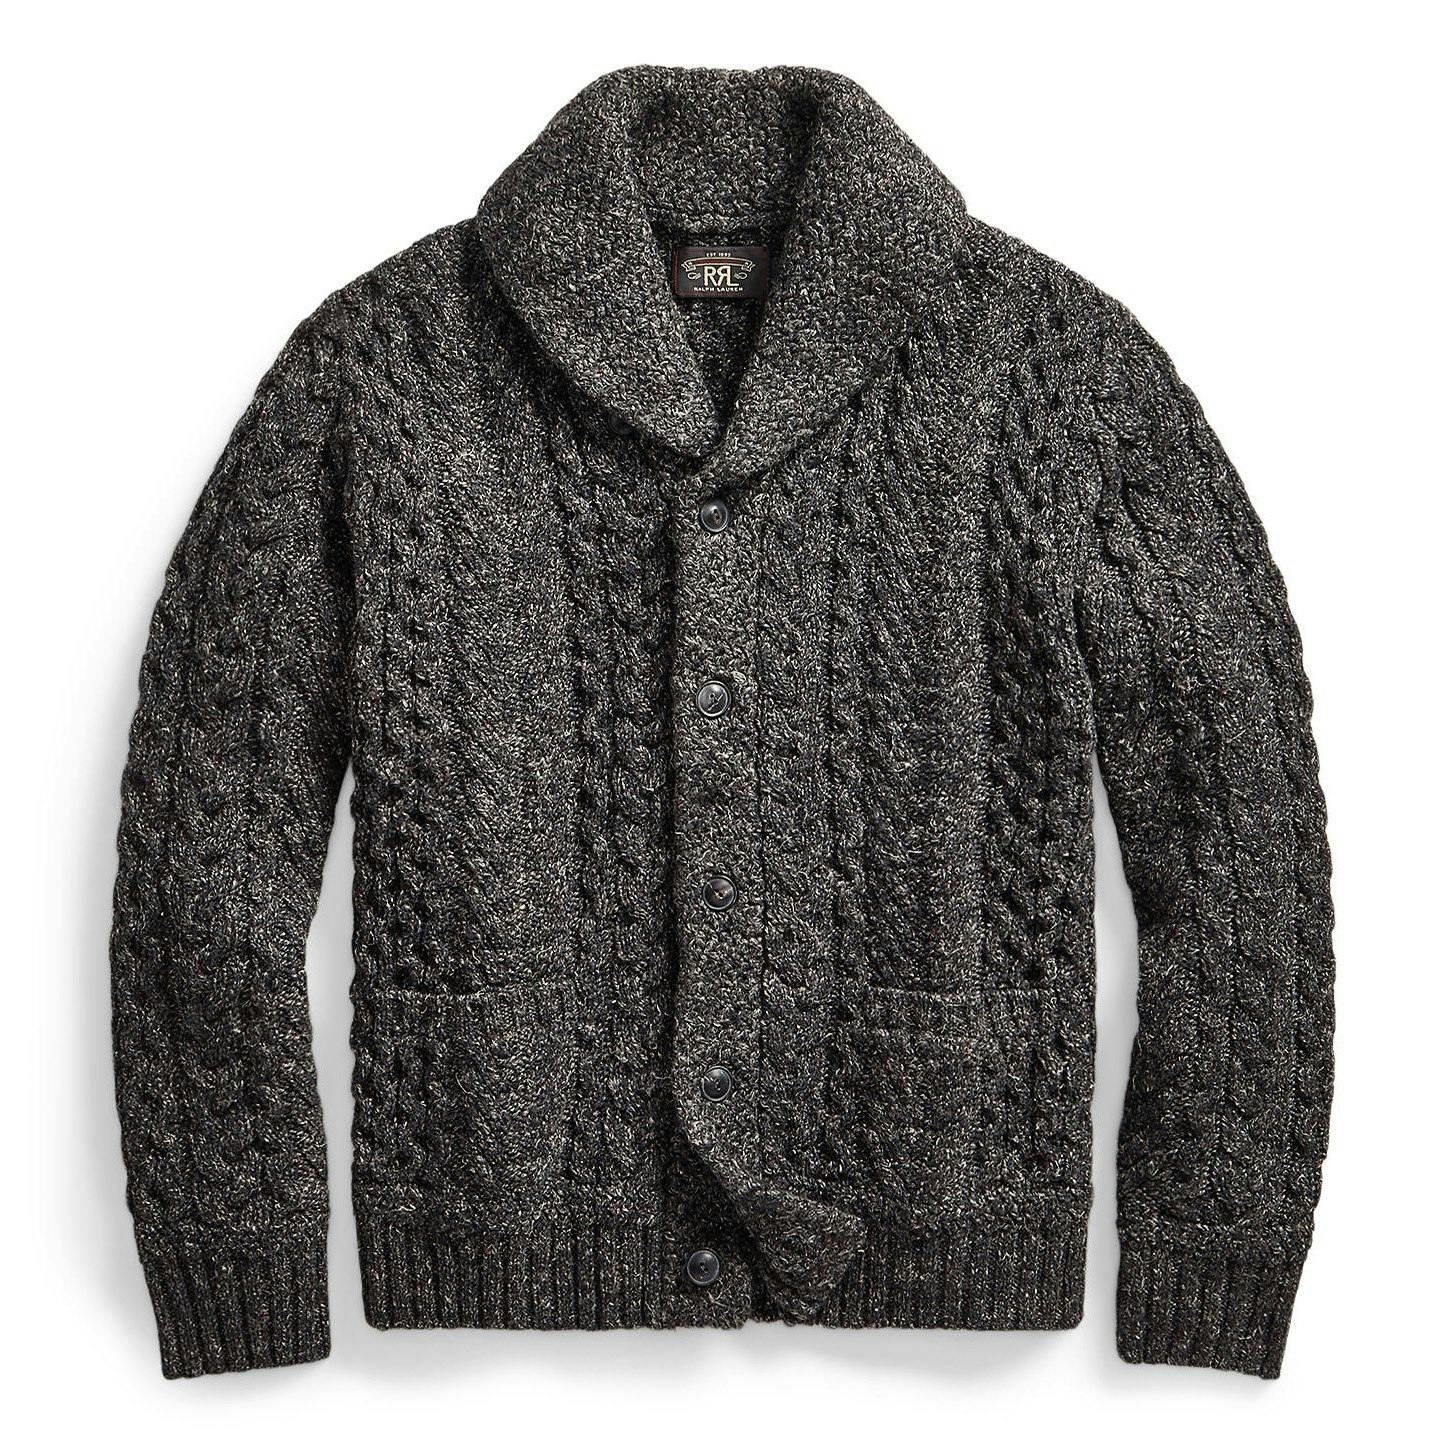 Shawl Collar Cableknit Cardigan Sweater